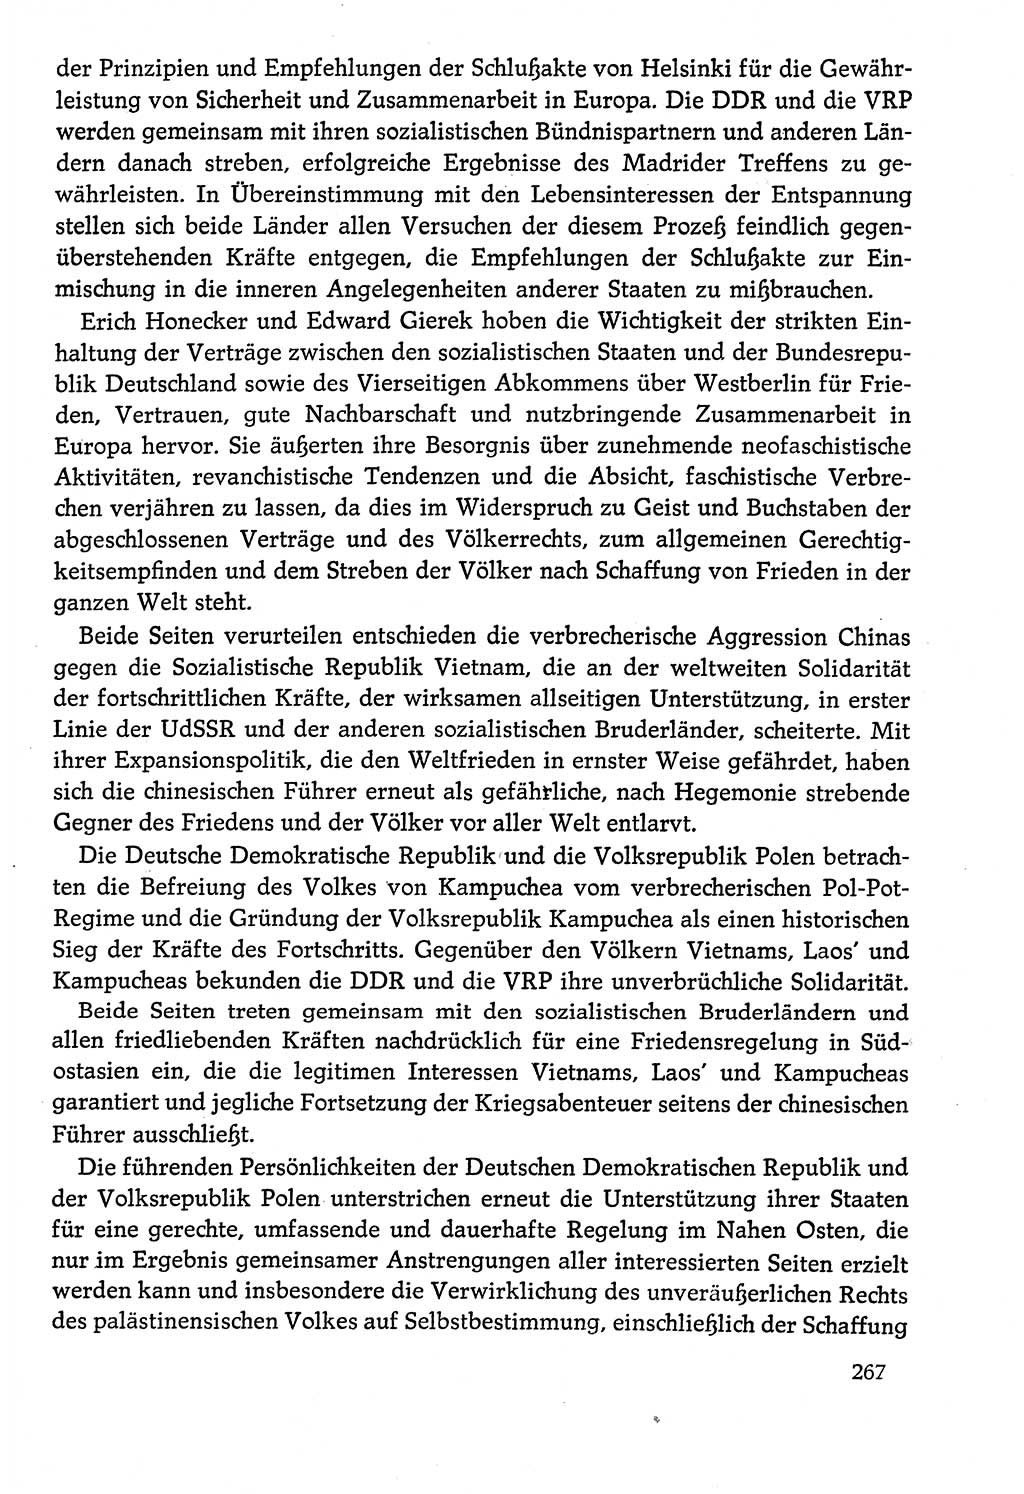 Dokumente der Sozialistischen Einheitspartei Deutschlands (SED) [Deutsche Demokratische Republik (DDR)] 1978-1979, Seite 267 (Dok. SED DDR 1978-1979, S. 267)